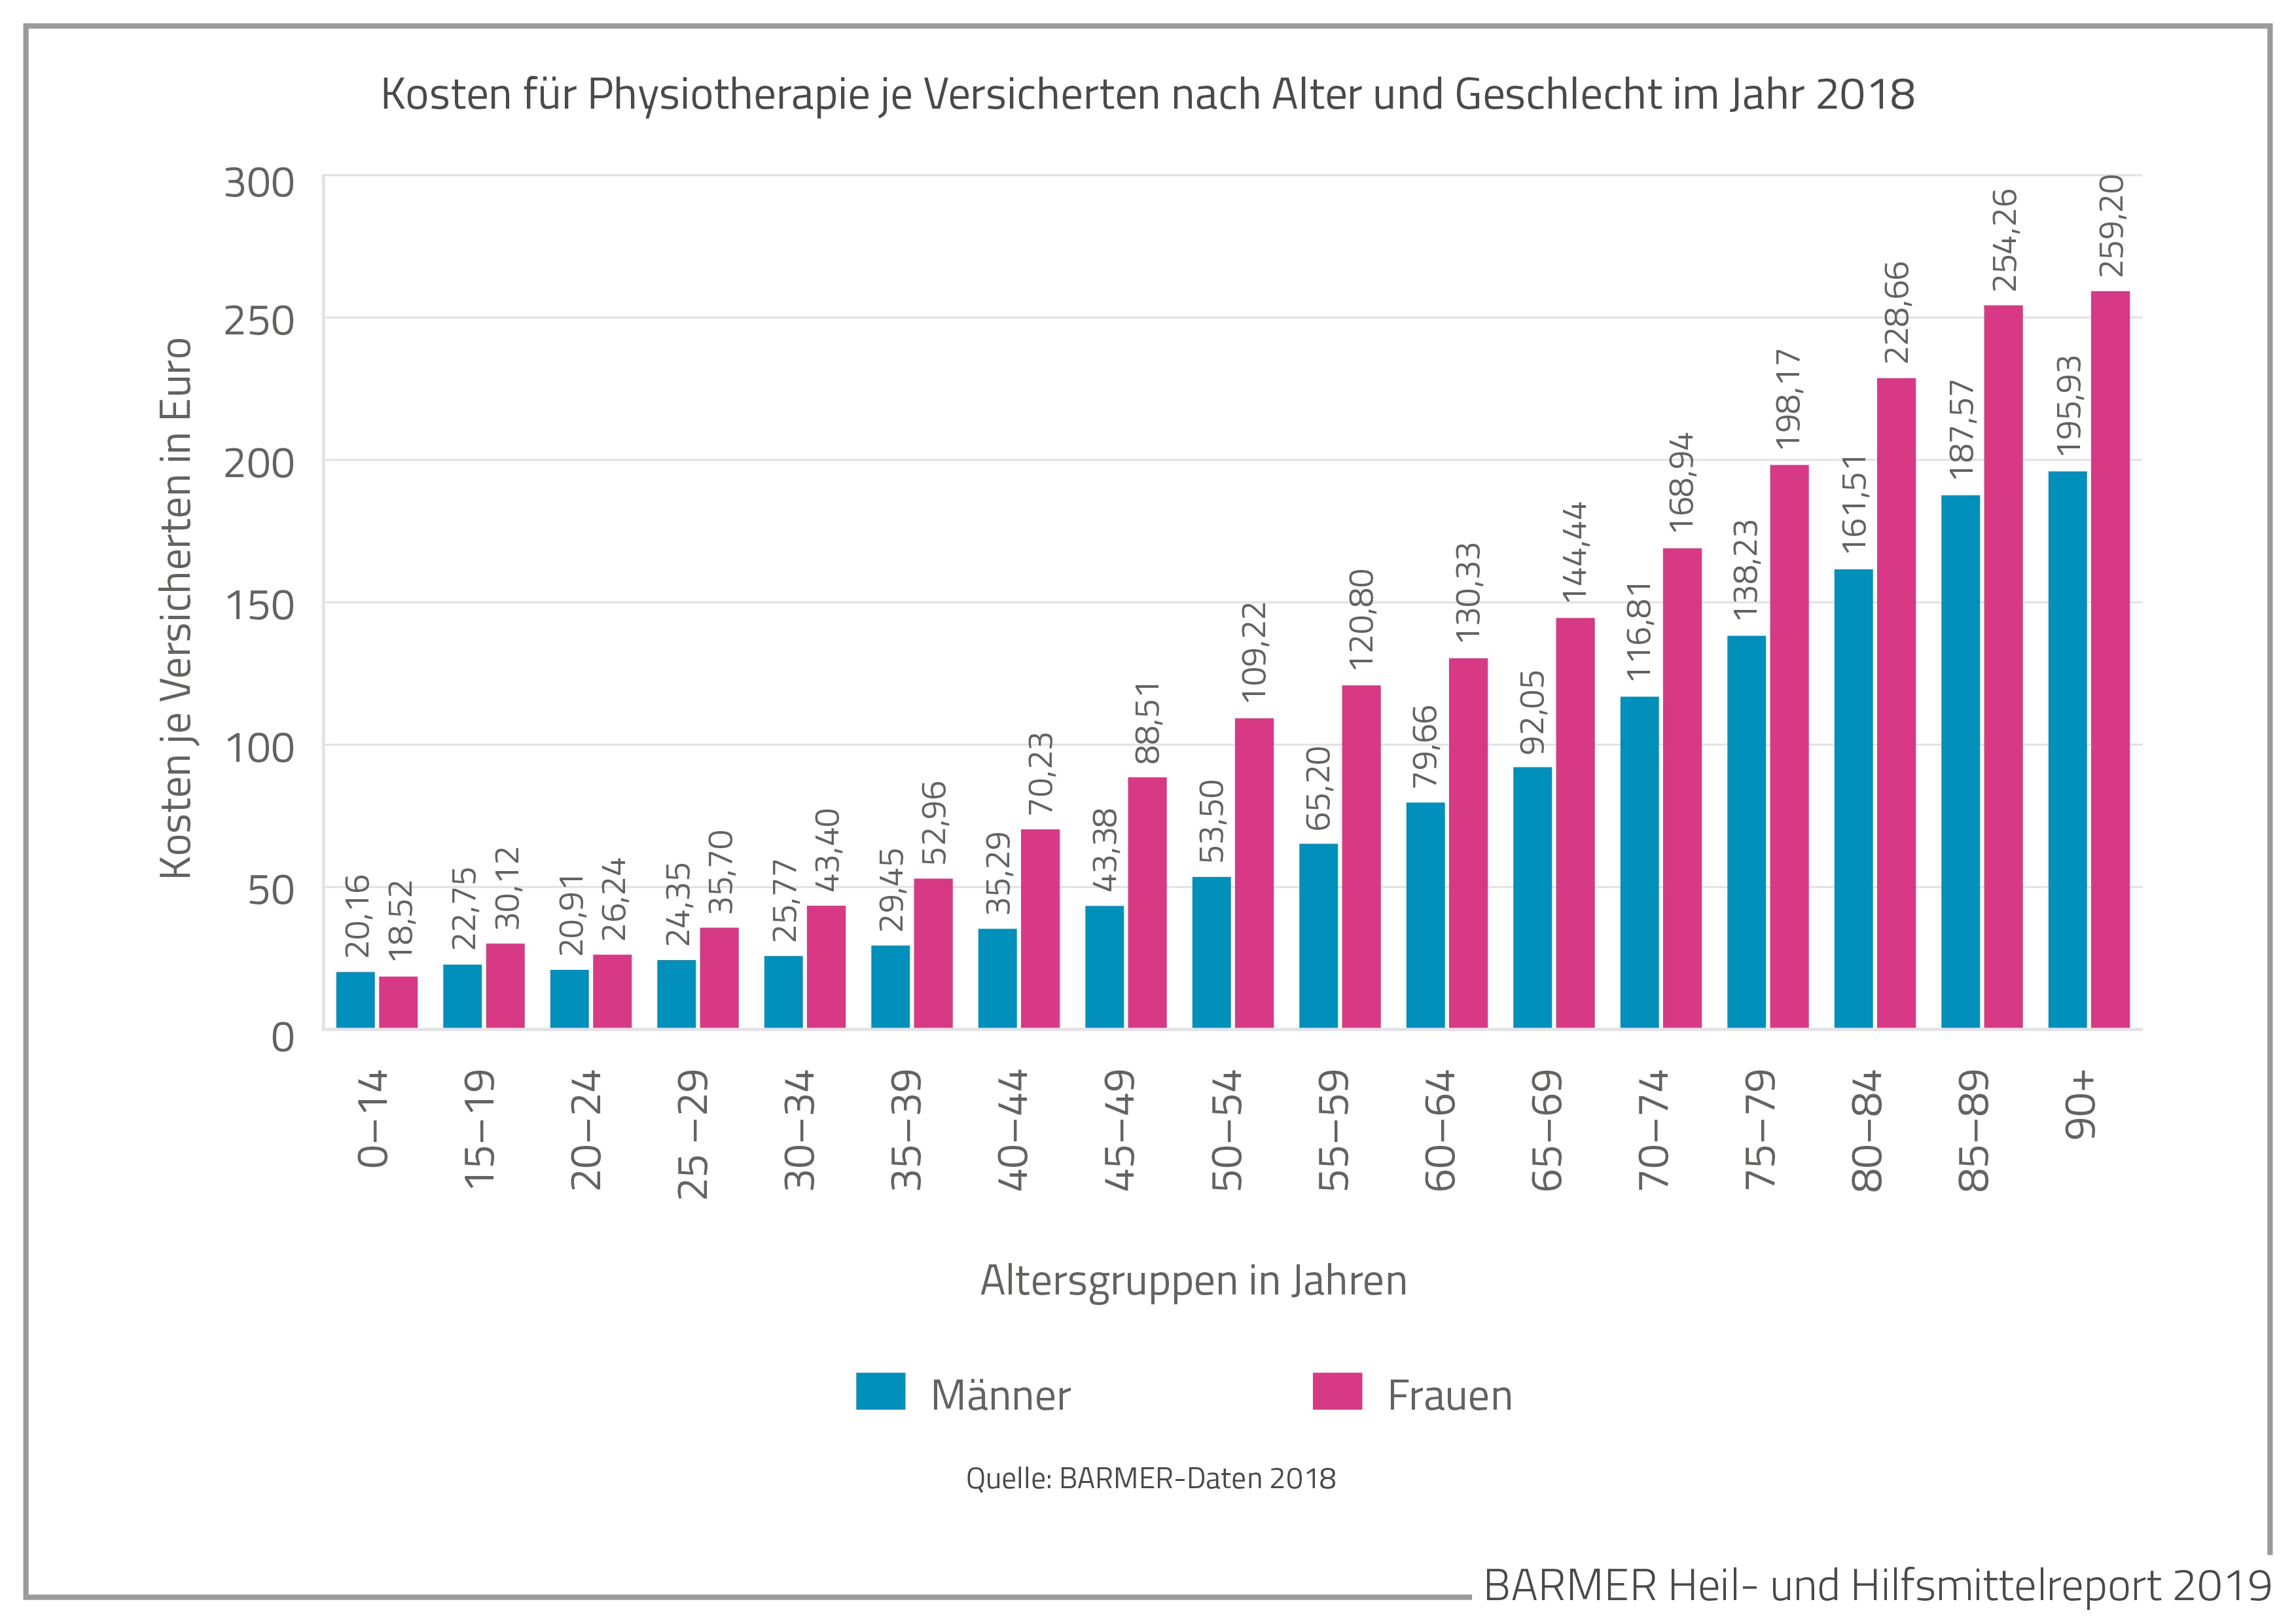 Die Grafik zeigt die Kosten für Physiotherapie je Versicherten nach Alter und Geschlecht im Jahr 2018, in Euro.